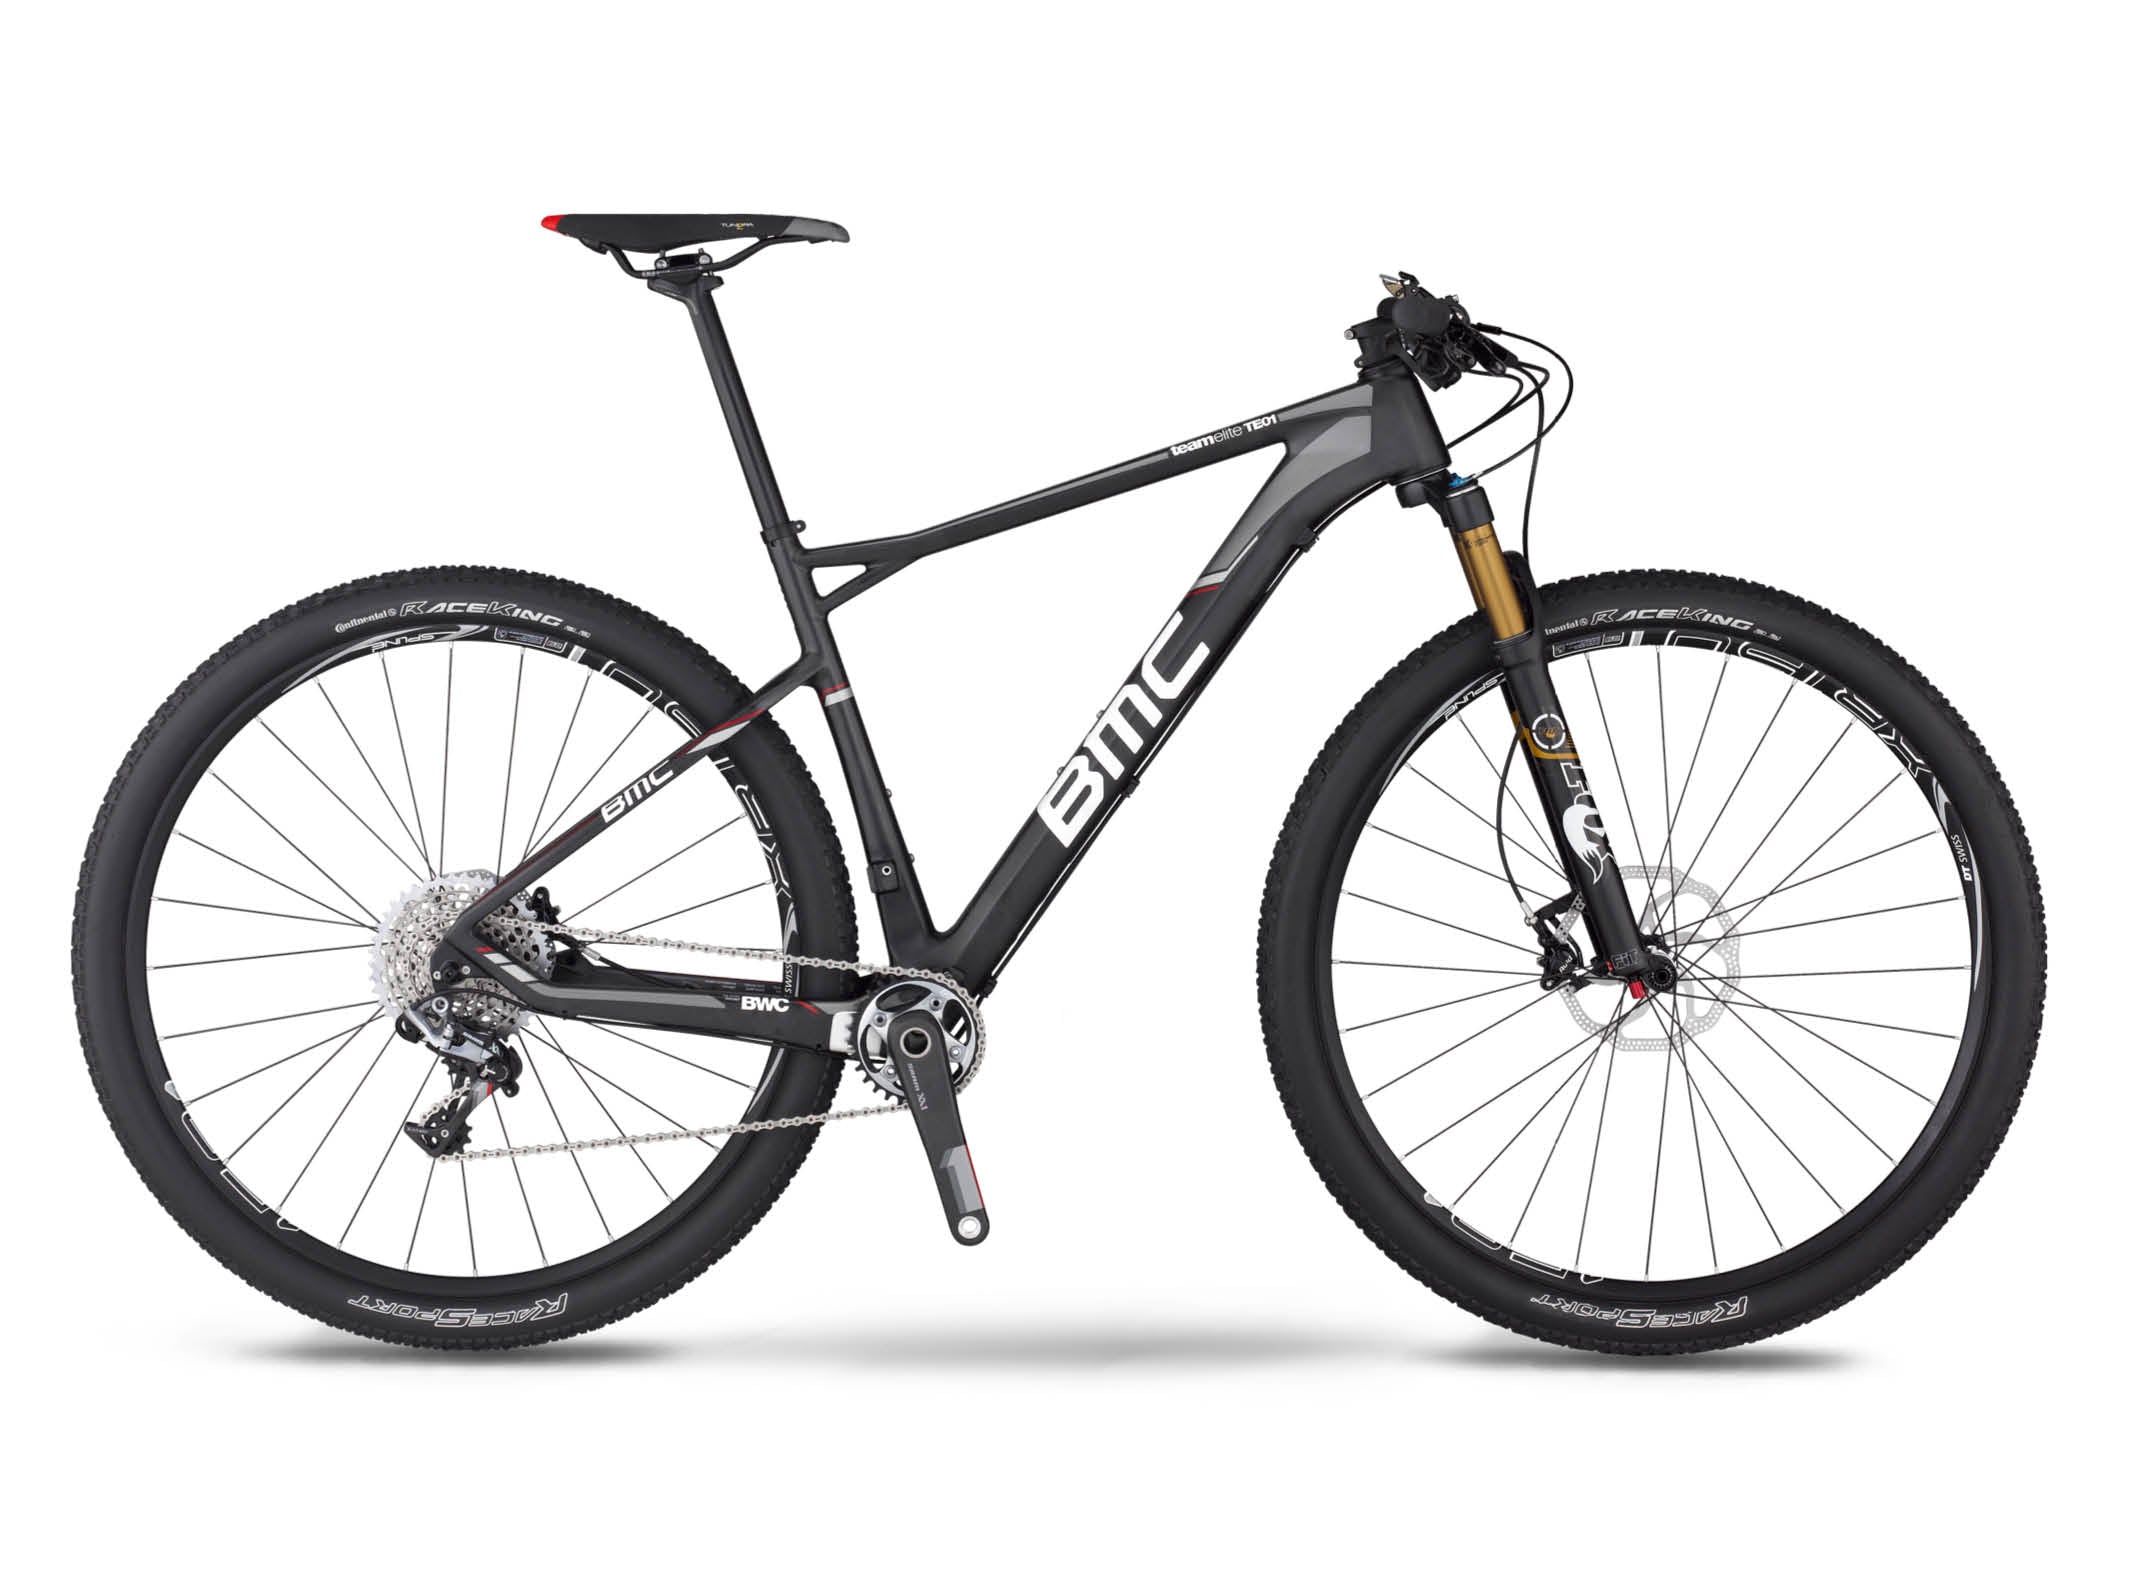 Teamelite TE01 29 XX1 | BMC | bikes | Mountain, Mountain | Cross-Country